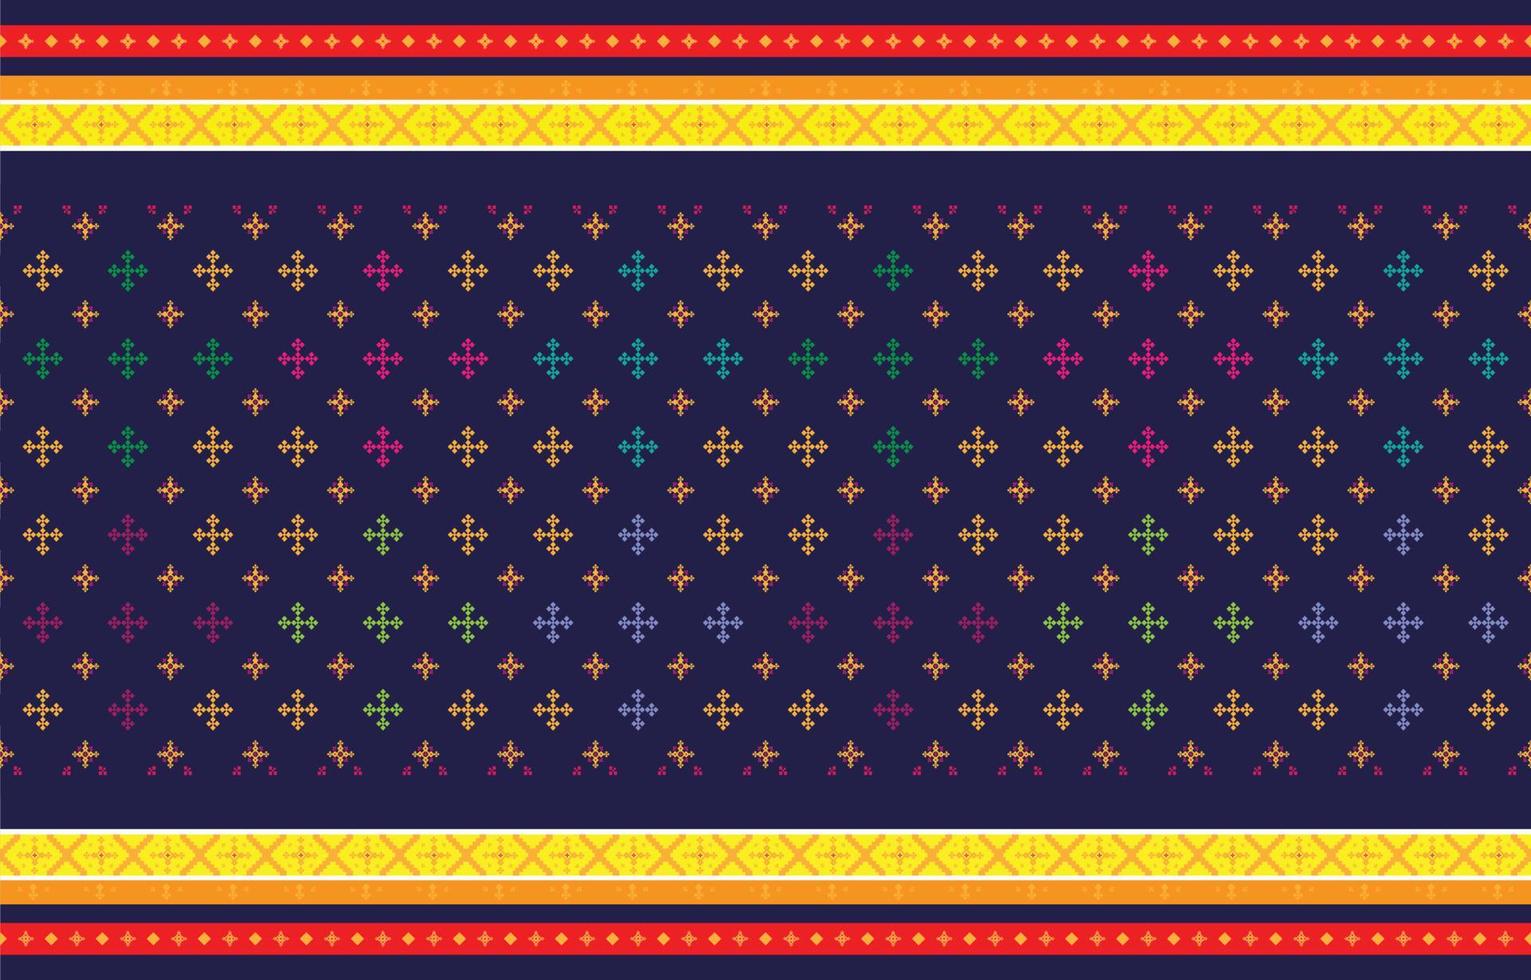 padrões geométricos e tribais abstratos, padrões de tecidos locais de design de uso e design inspirado em tribos indígenas. ilustração vetorial geométrica vetor